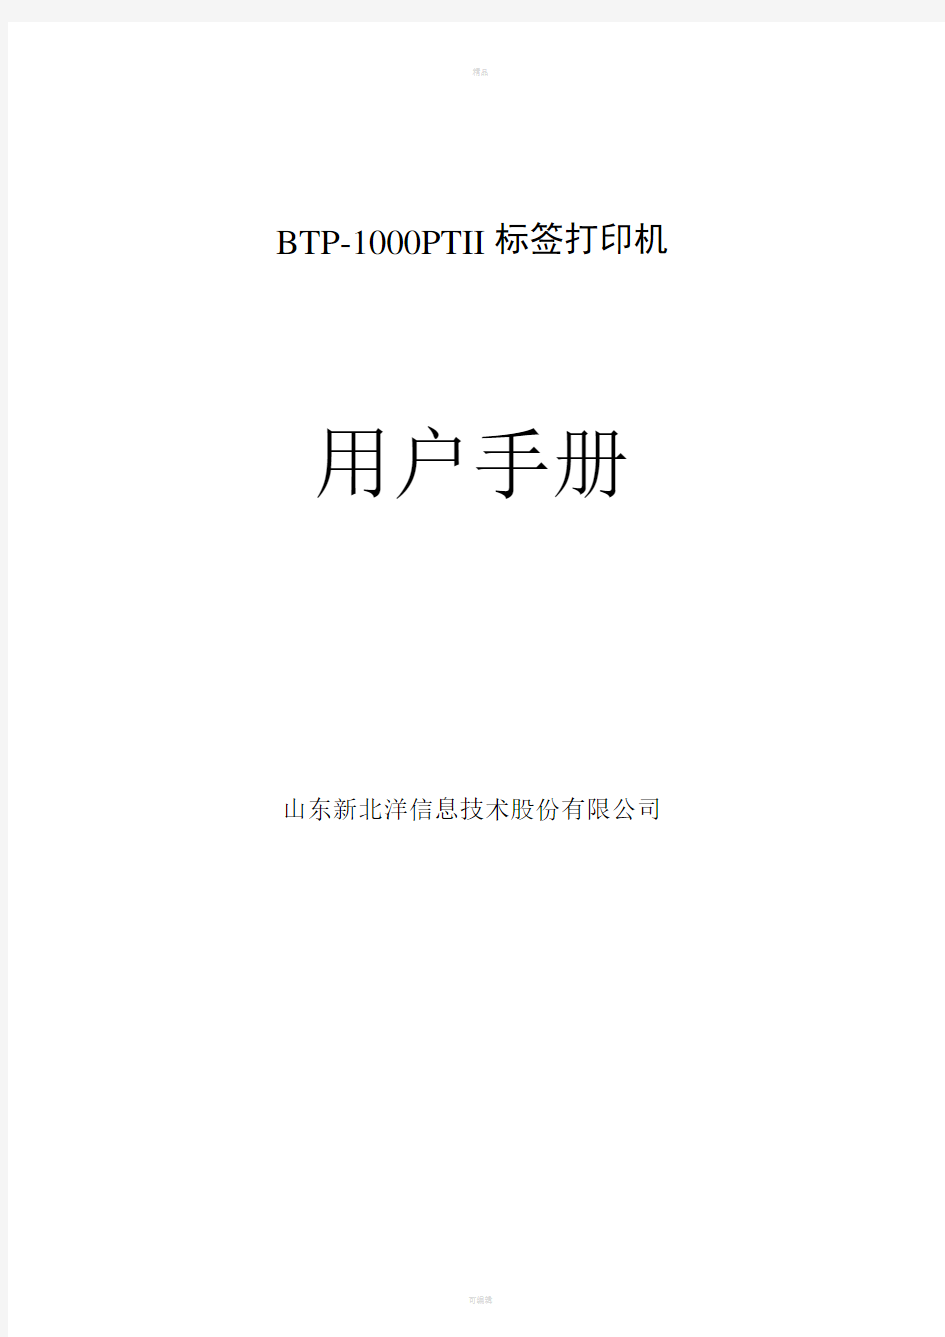 BTP-1000PTII用户手册